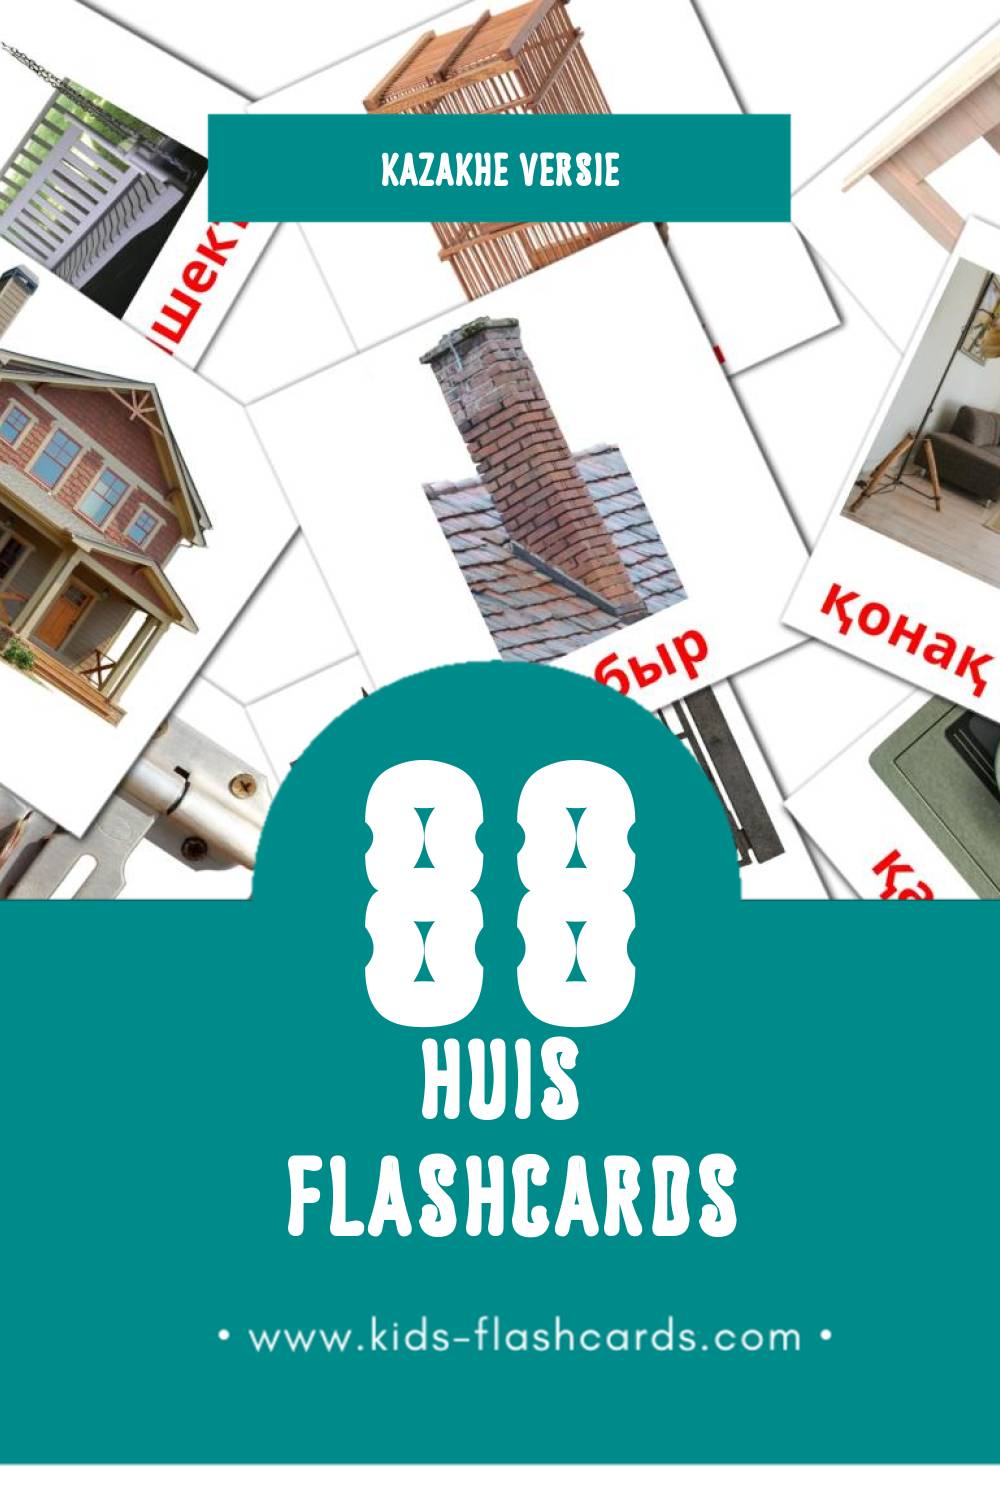 Visuele Үй Flashcards voor Kleuters (88 kaarten in het Kazakh)